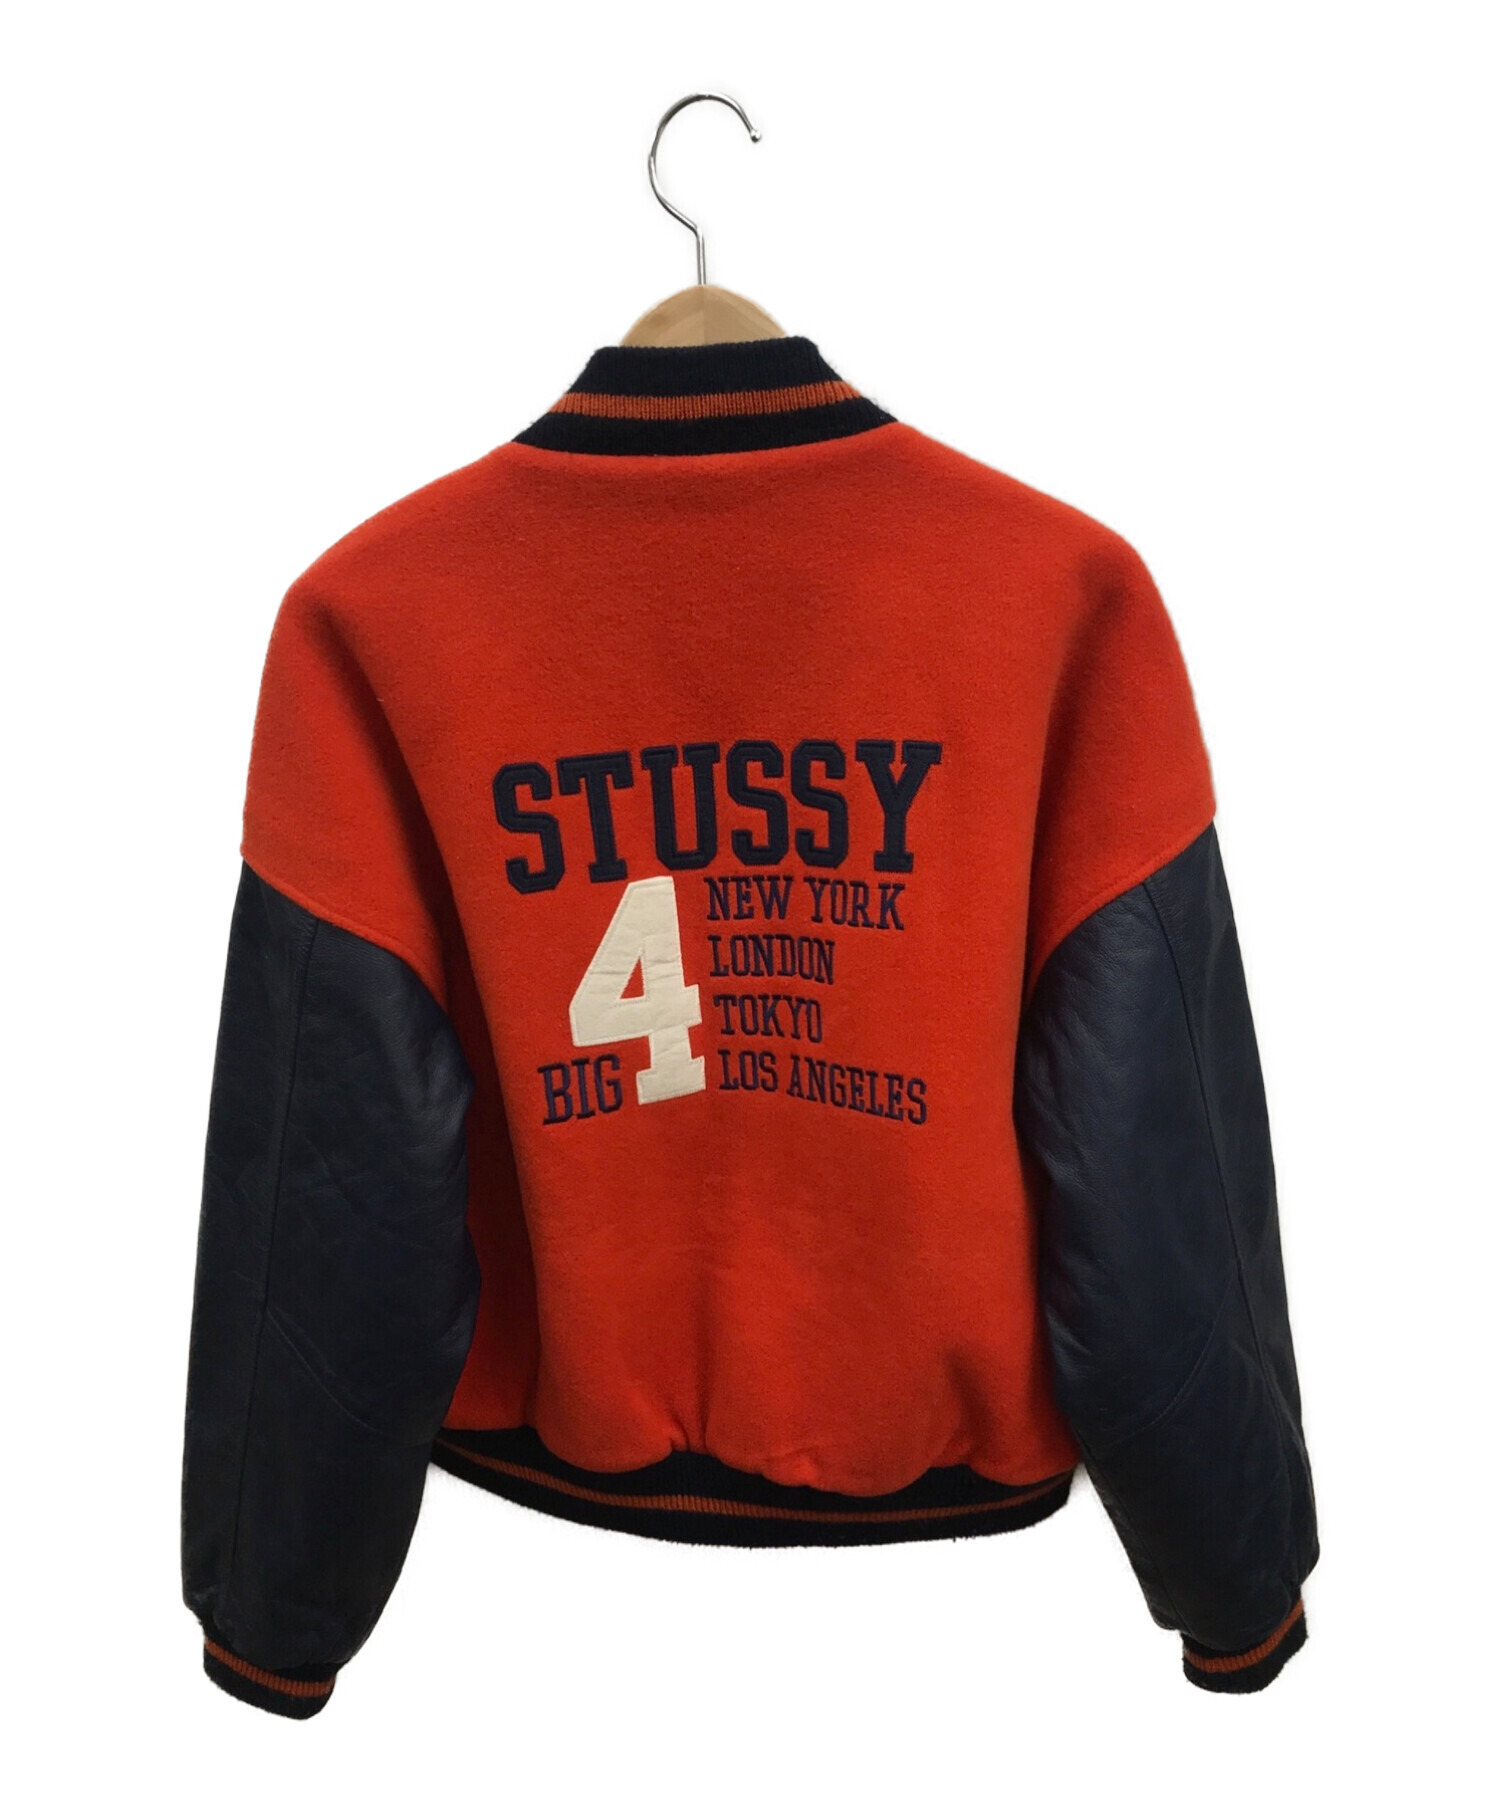 stussy (ステューシー) 90'Sヴィンテージ限定スタジャン オレンジ×ネイビー サイズ:S